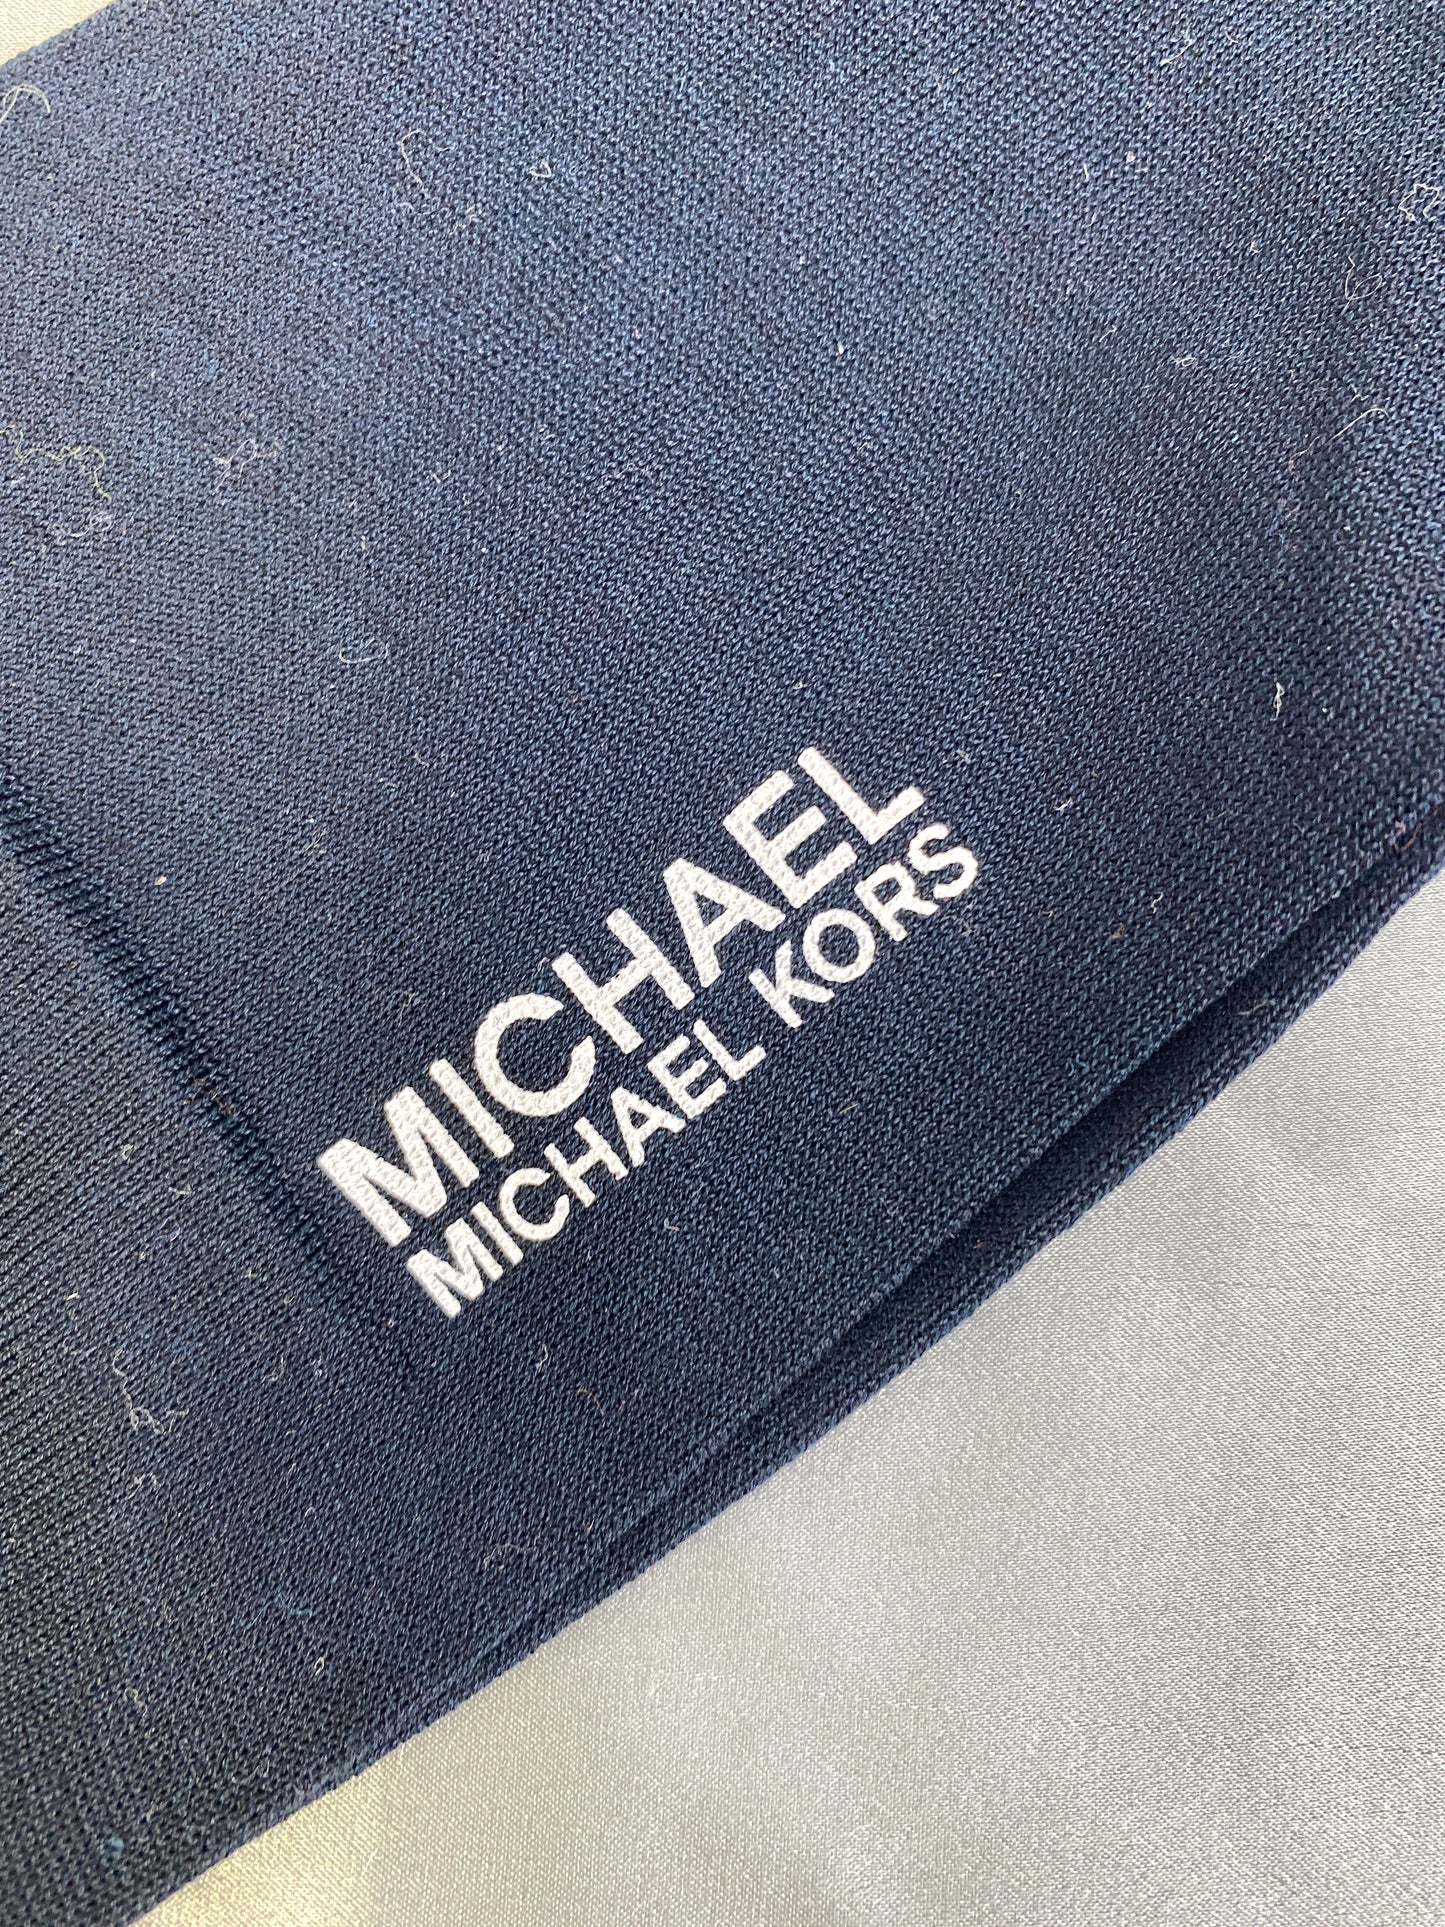 Brand New Michael Kors Designer Argyle Dress Socks, x1 Pair 